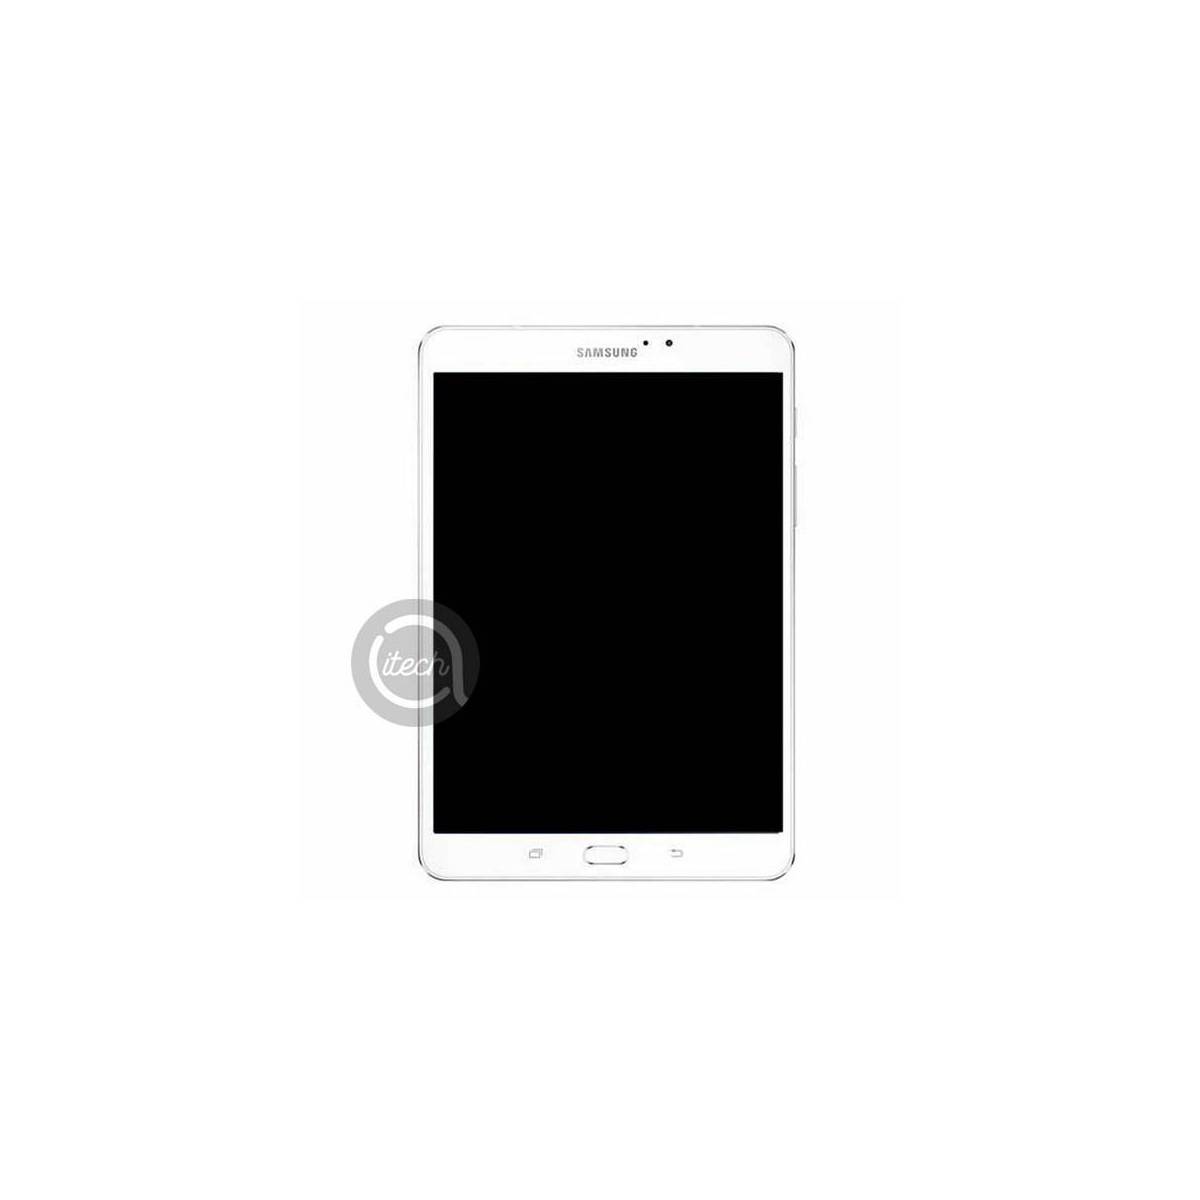 Ecran LCD Samsung Galaxy Tab S2 - 8.0 - T710/T715